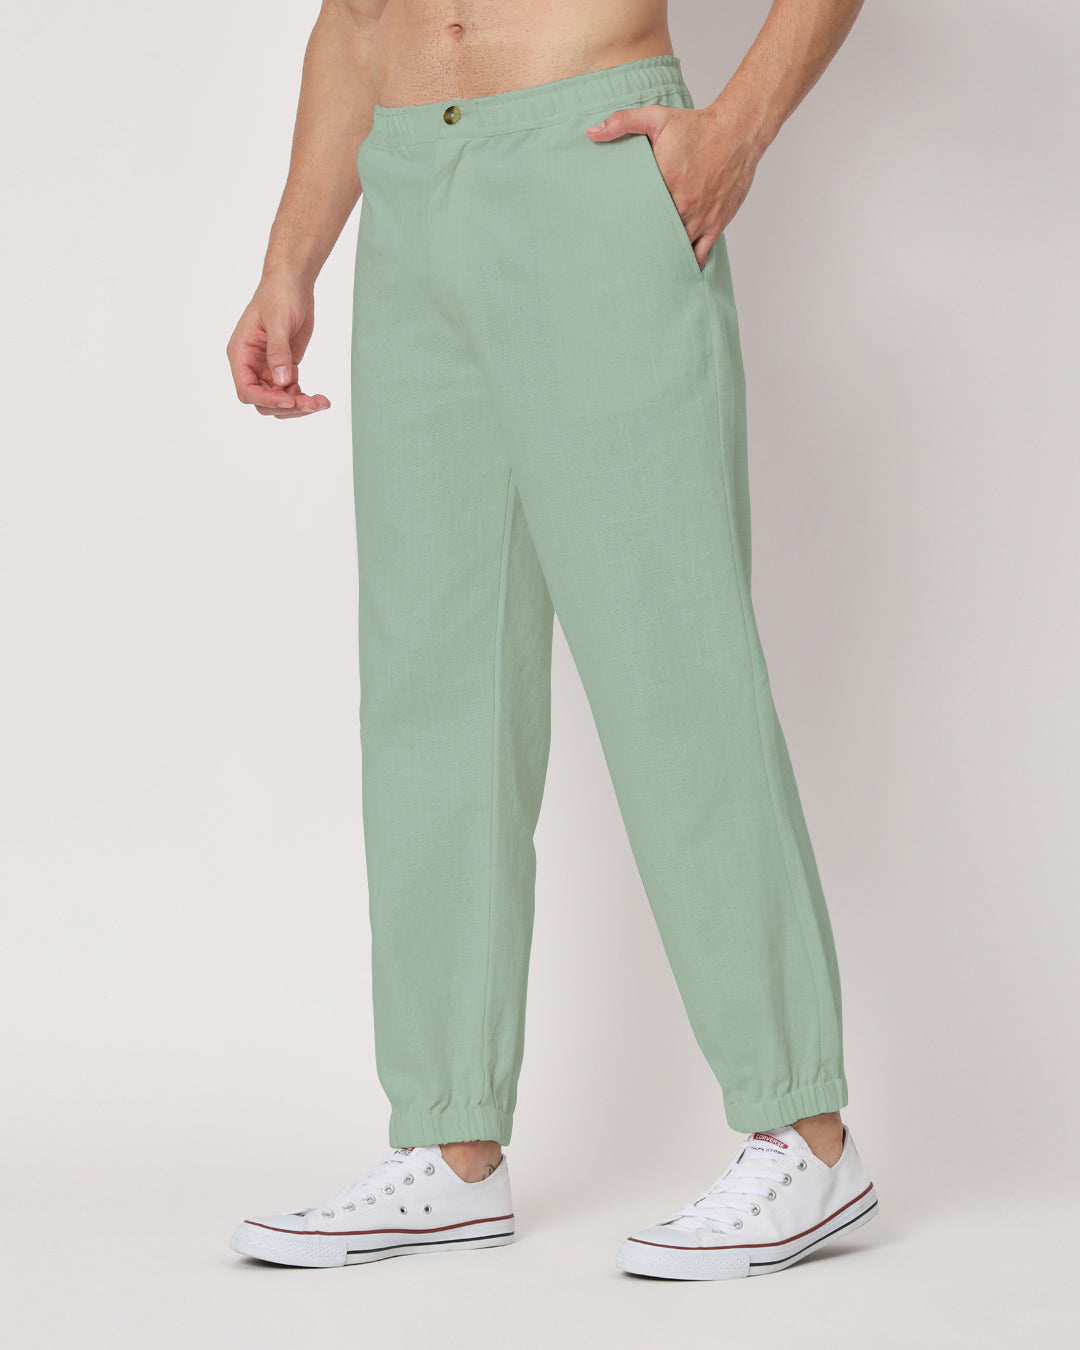 Combo: White & Spring Green Jog Men's Pants - Set of 2